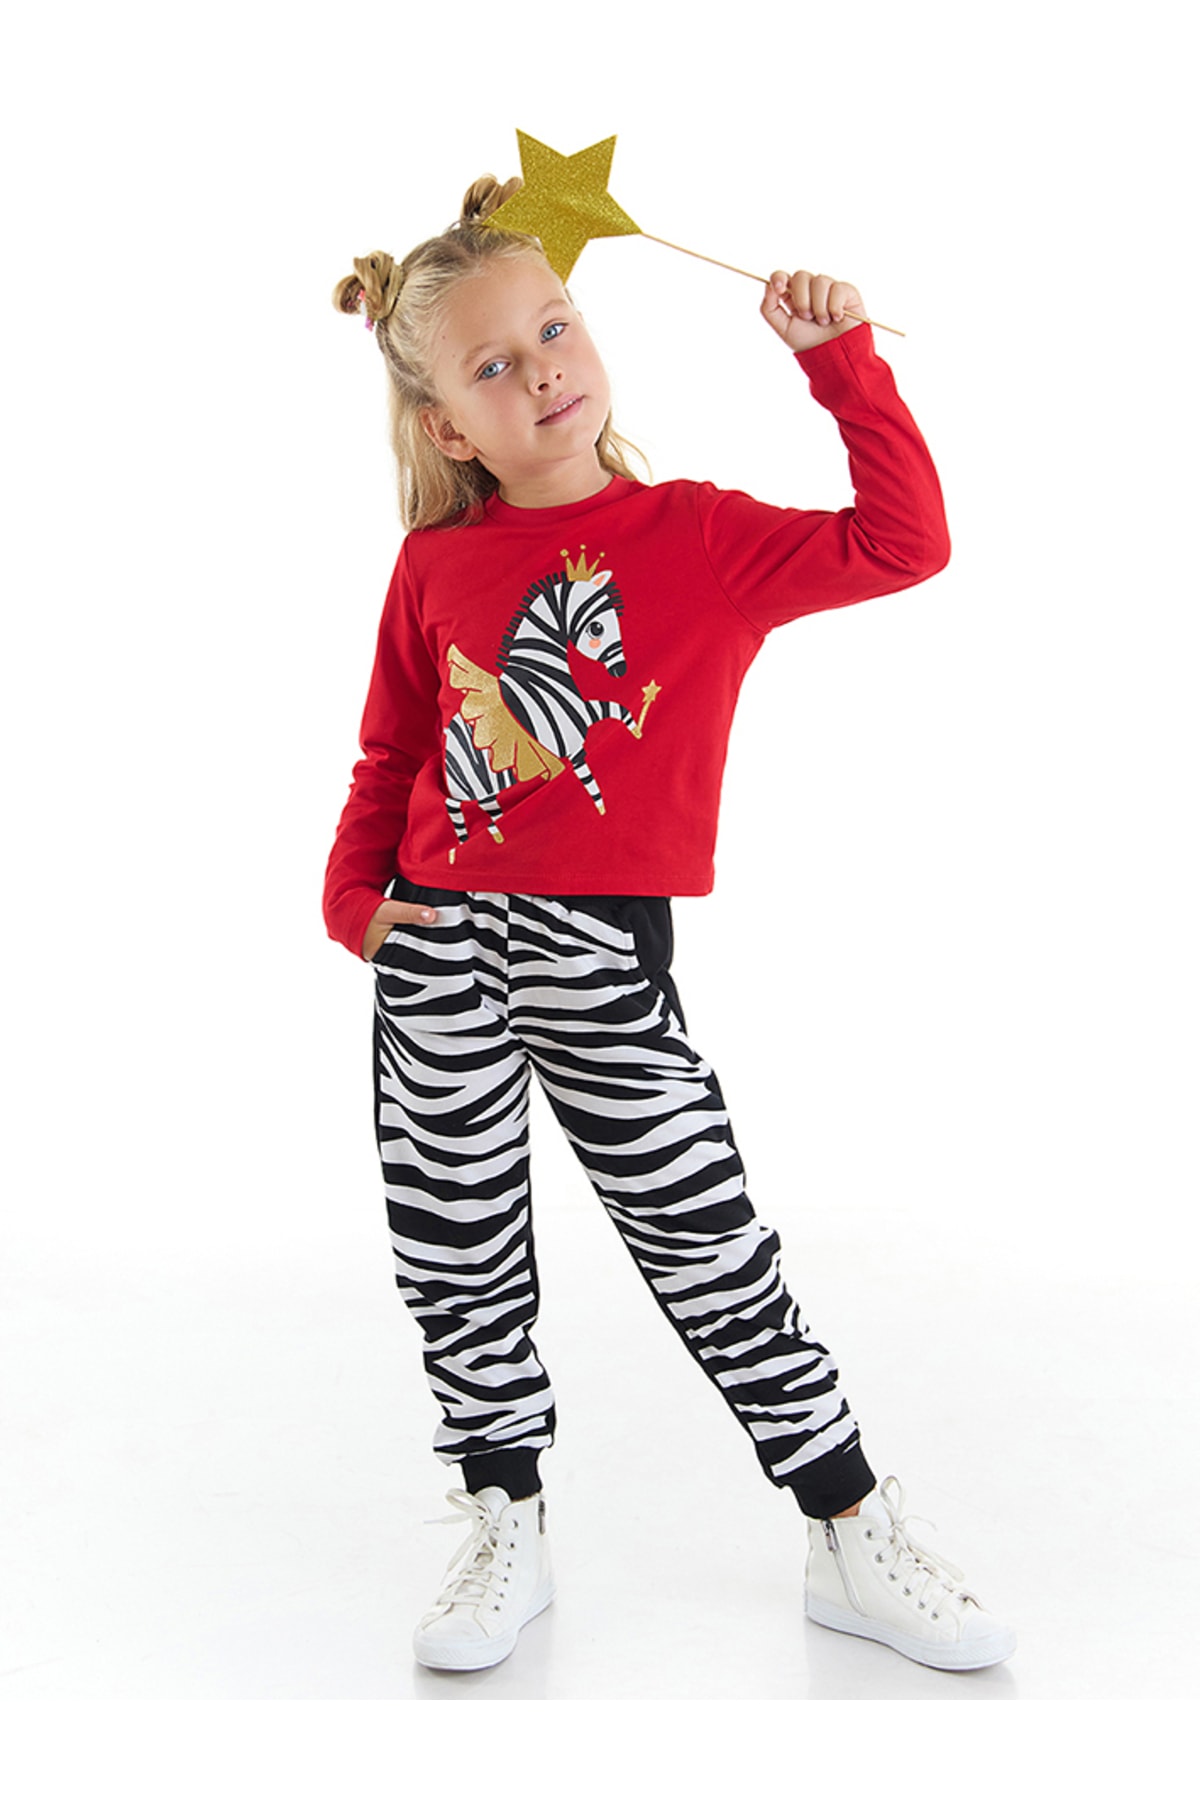 Levně Denokids Ballerina Zebra Girls' T-shirt and Pants Set